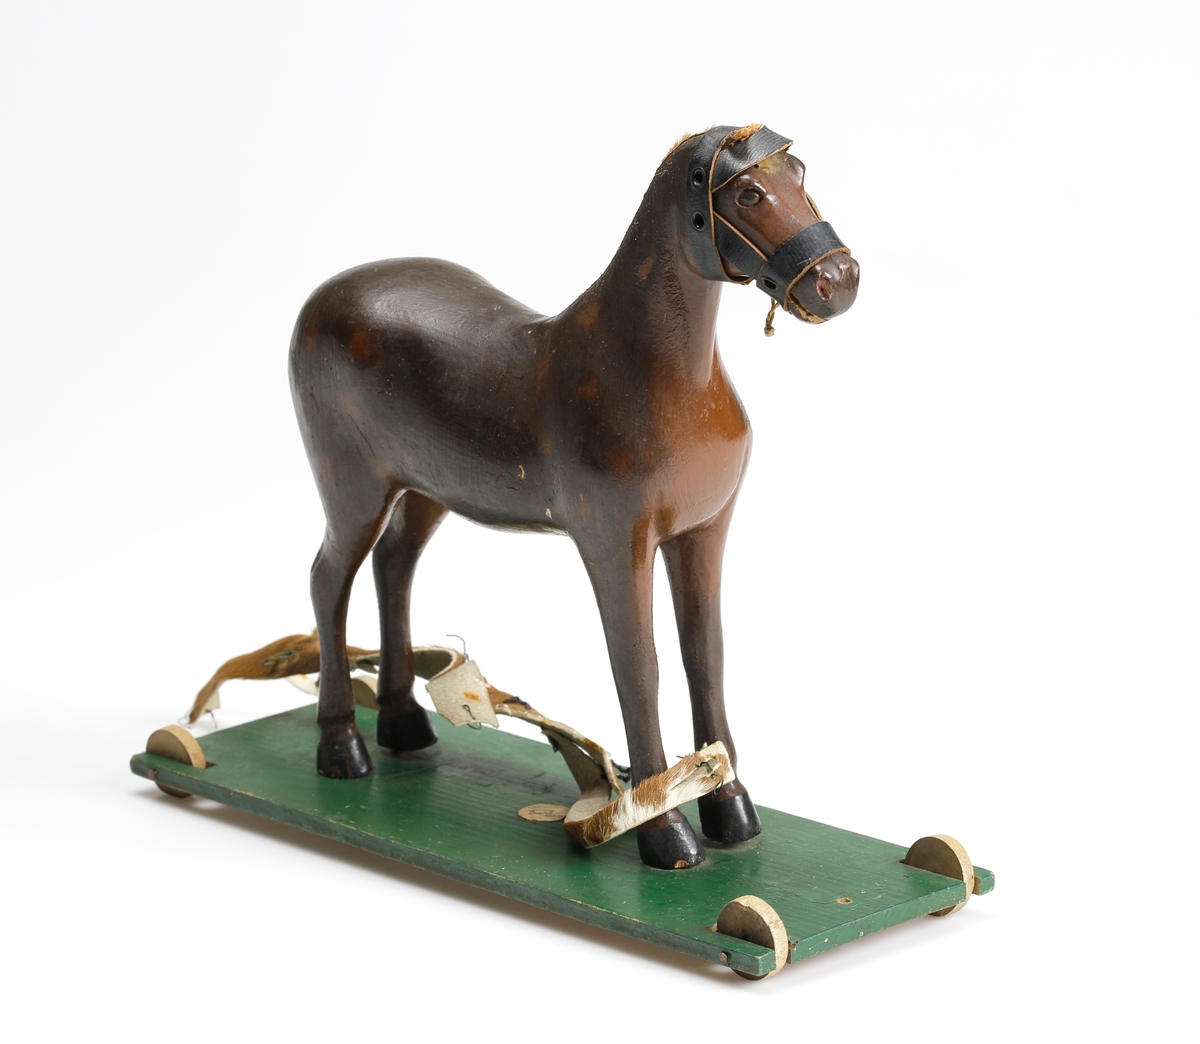 En leksakshäst av trä, stående på en grön platta med hjul.